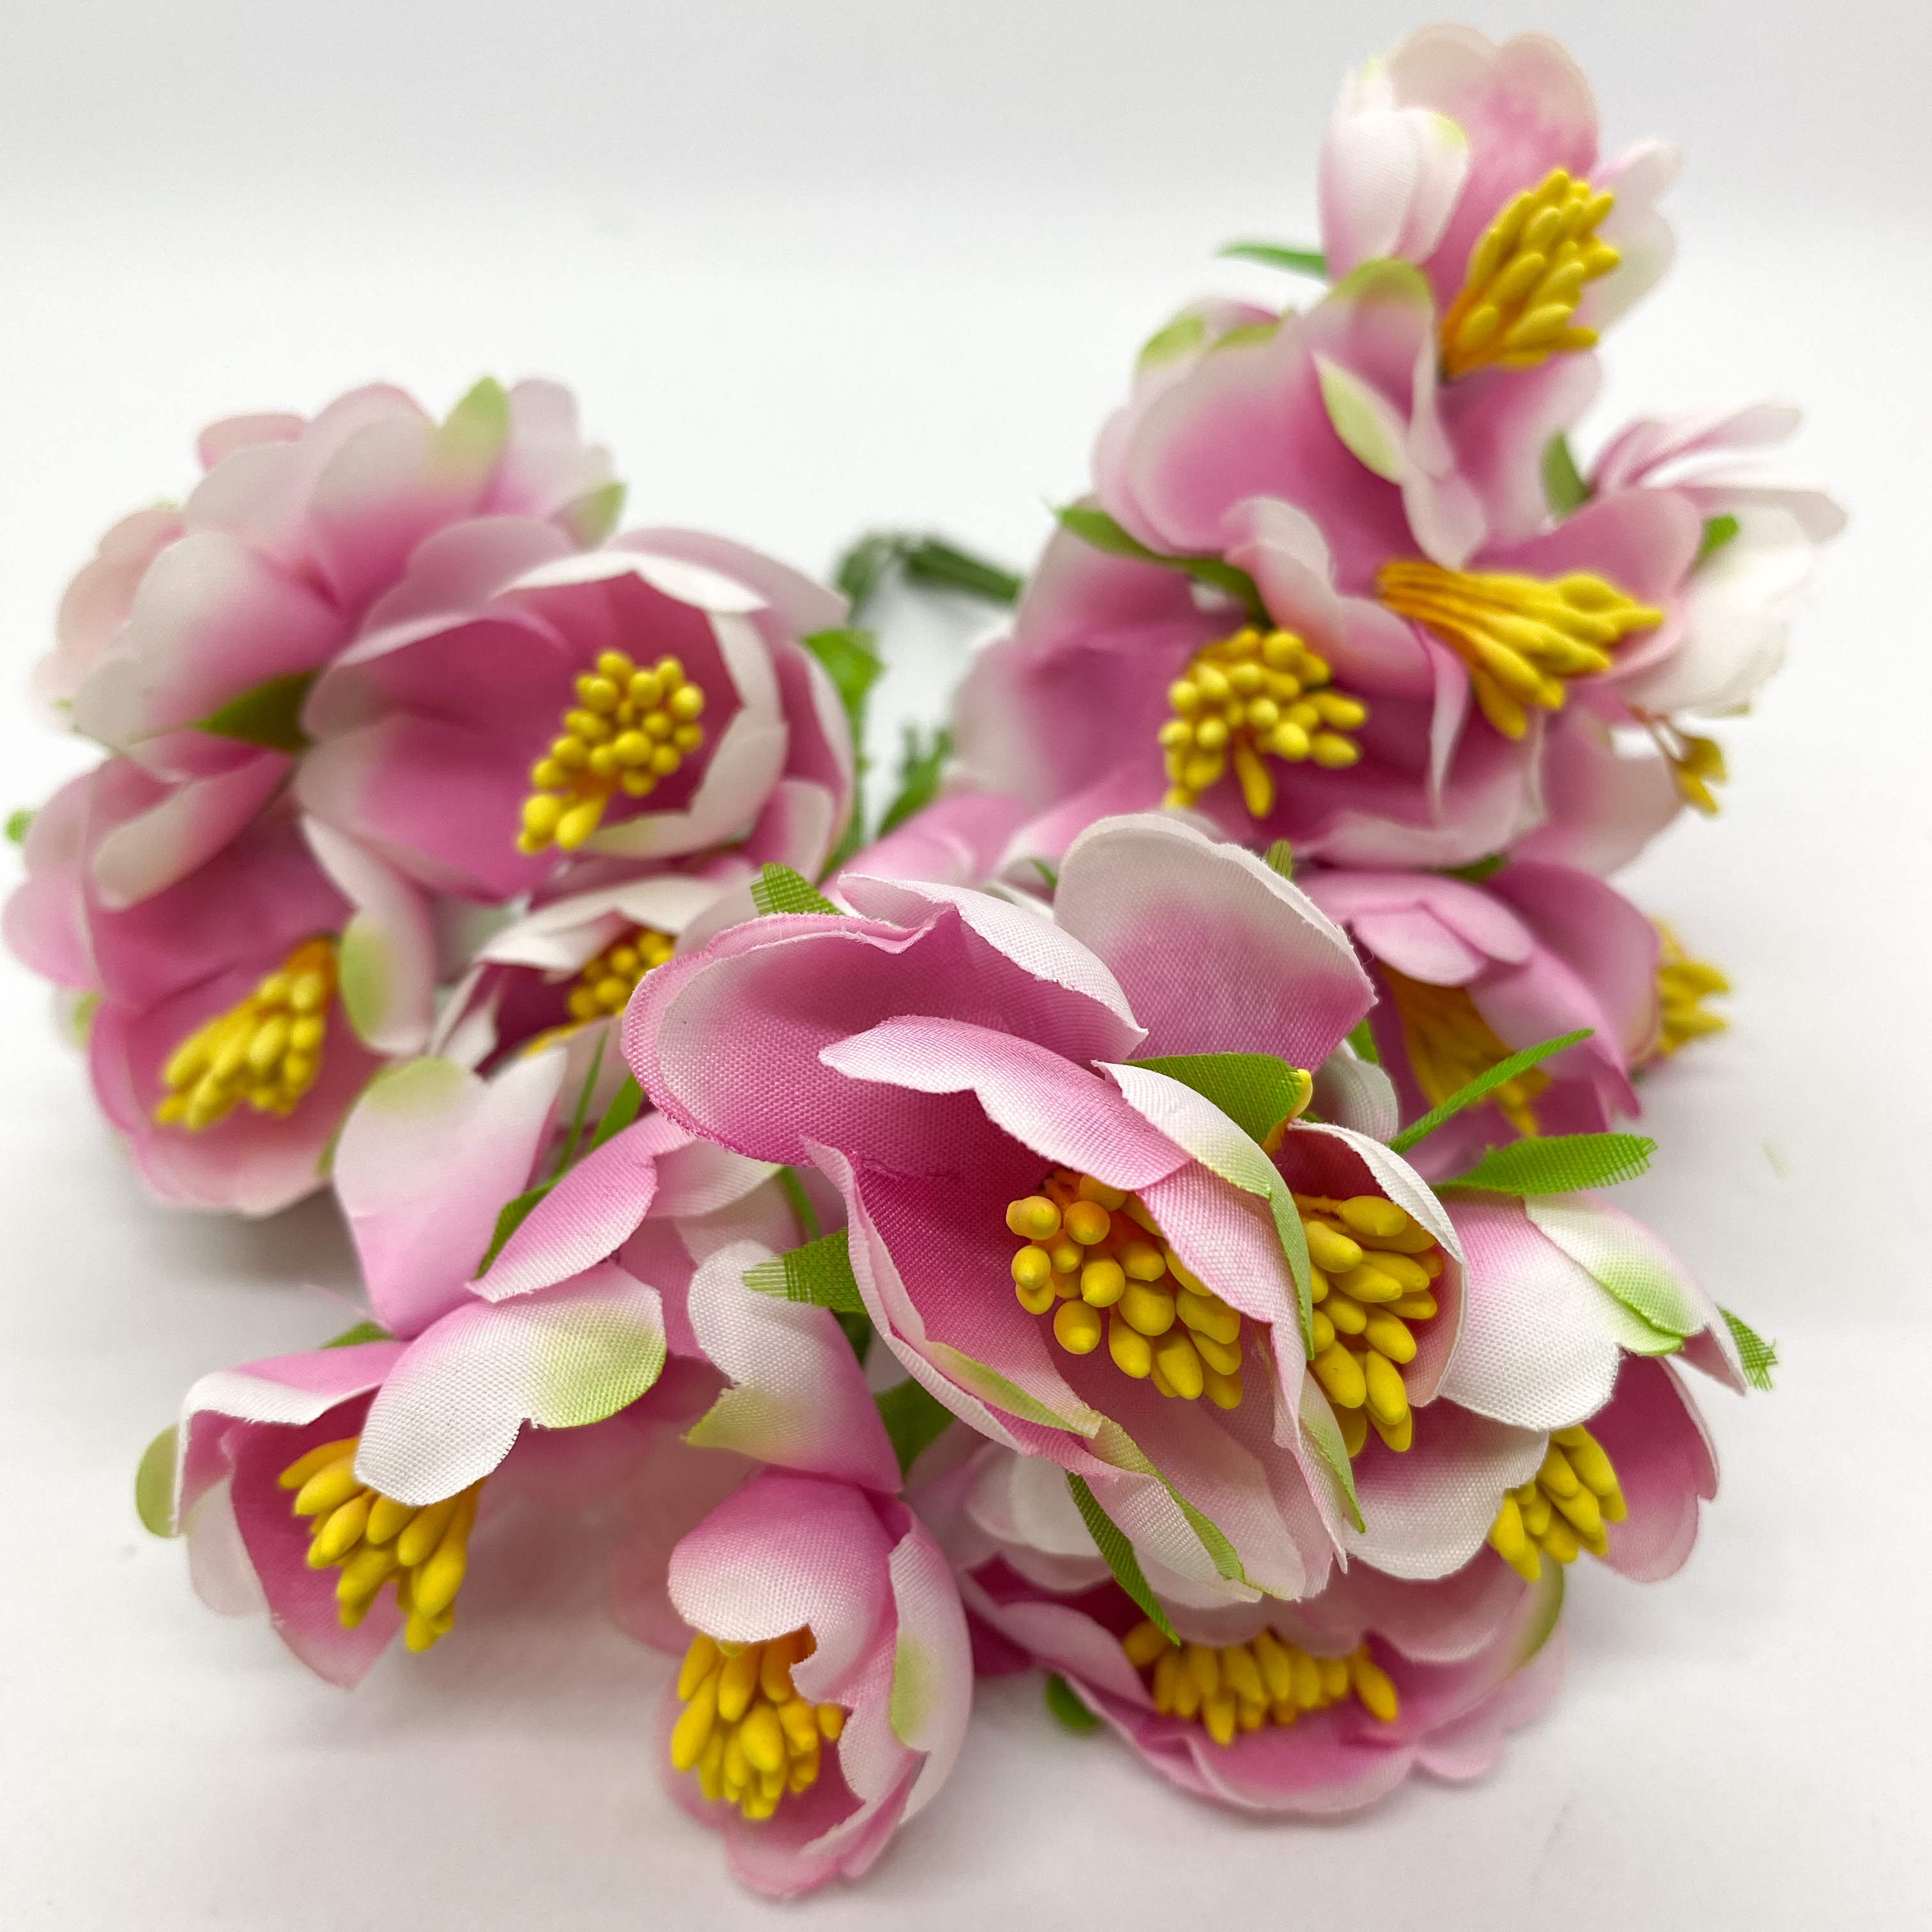 Набор тканевых декоративных цветочков, розовый с зеленым, 6 шт.